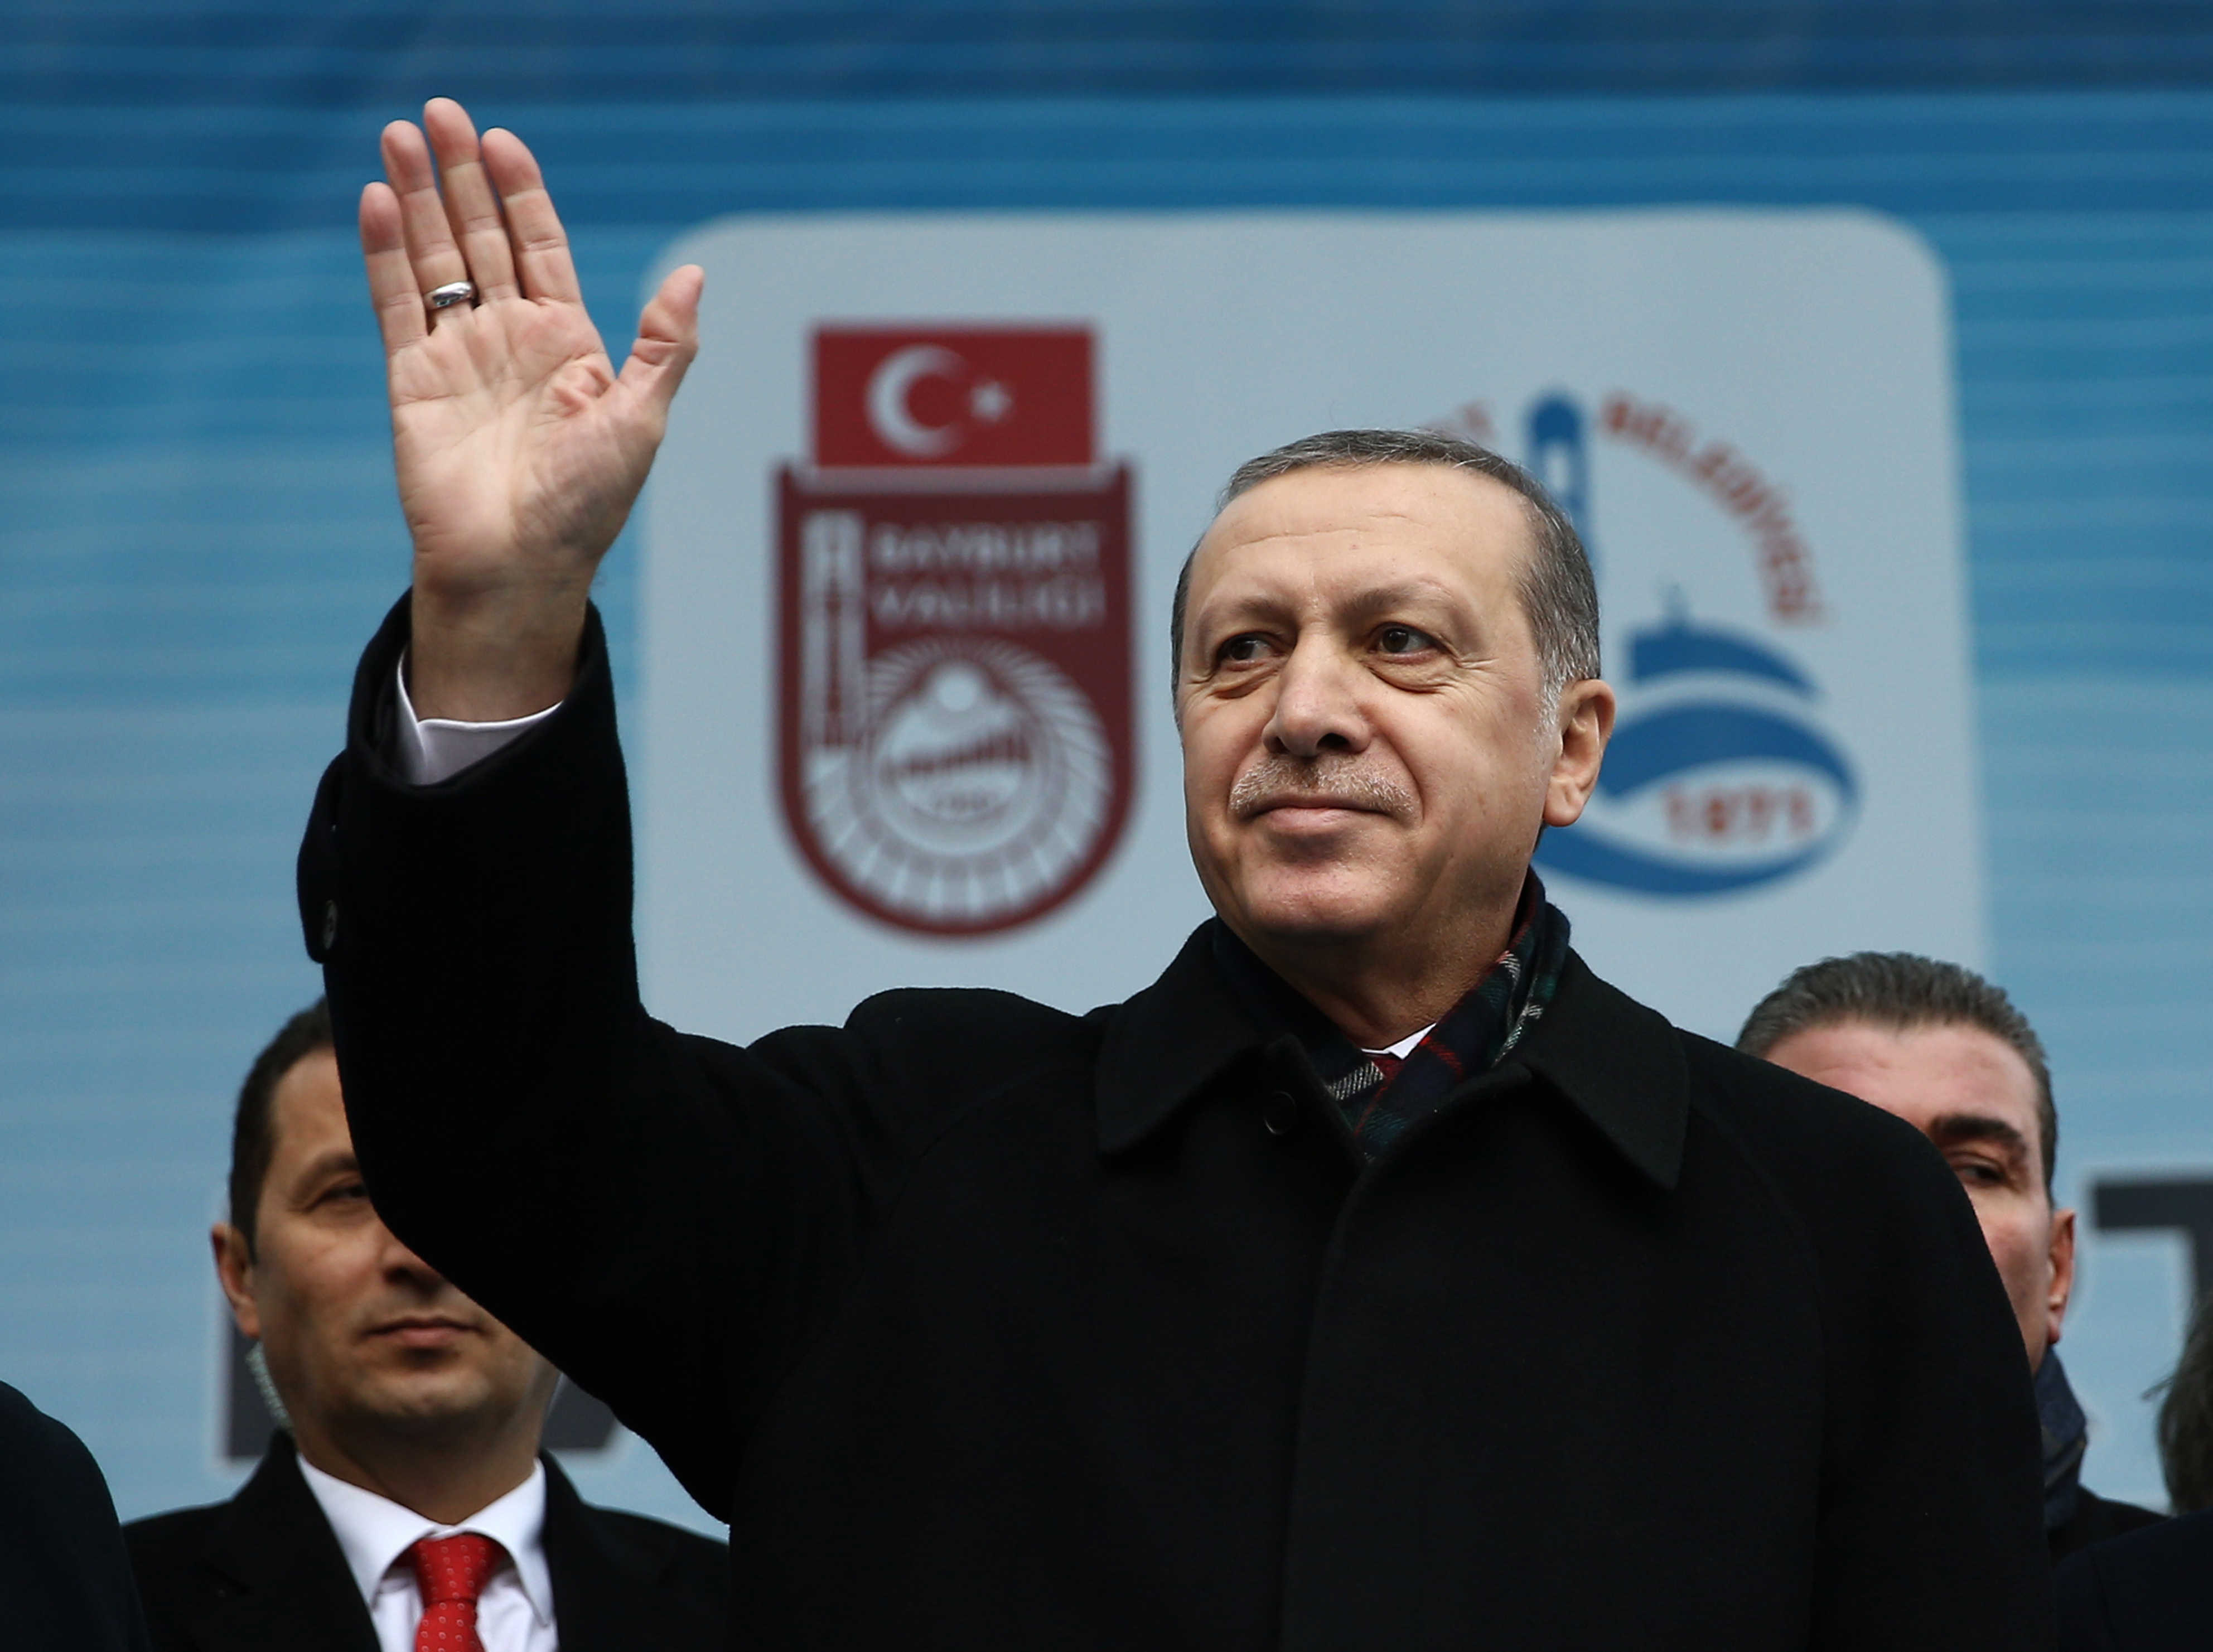 Τι ανταλλάγματα θα λάβει η Τουρκία για τον έλεγχο των προσφυγικών ροών